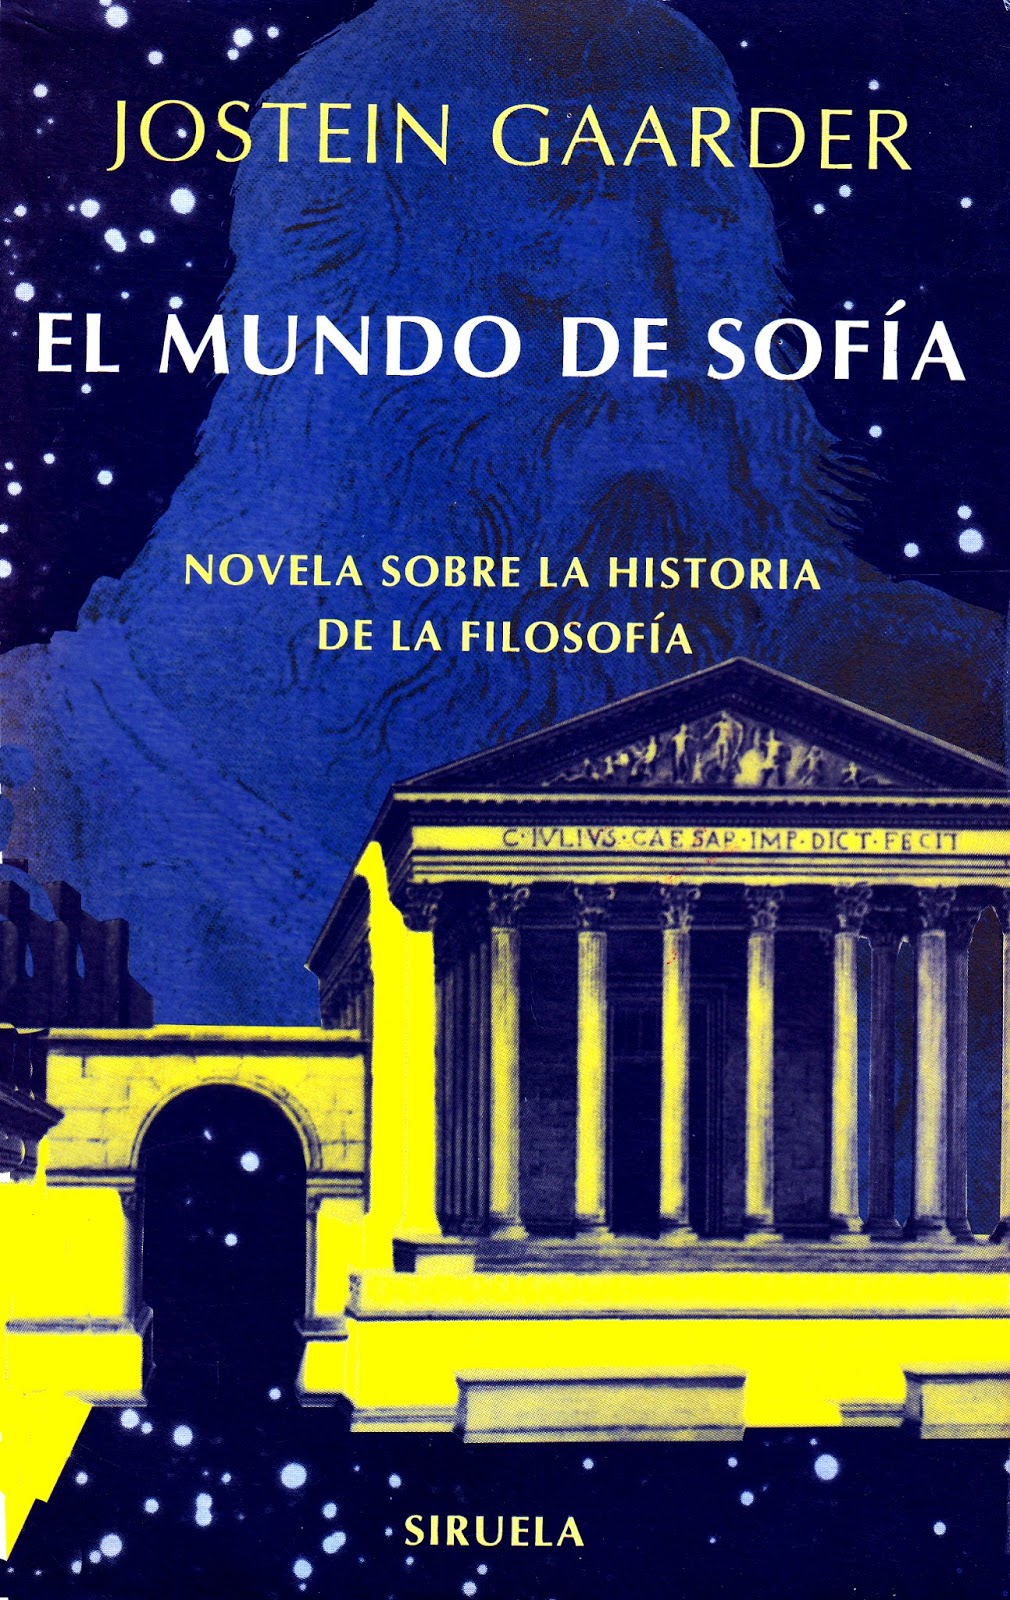 Libro de audio El Mundo de Sofía – Jostein Gaarder